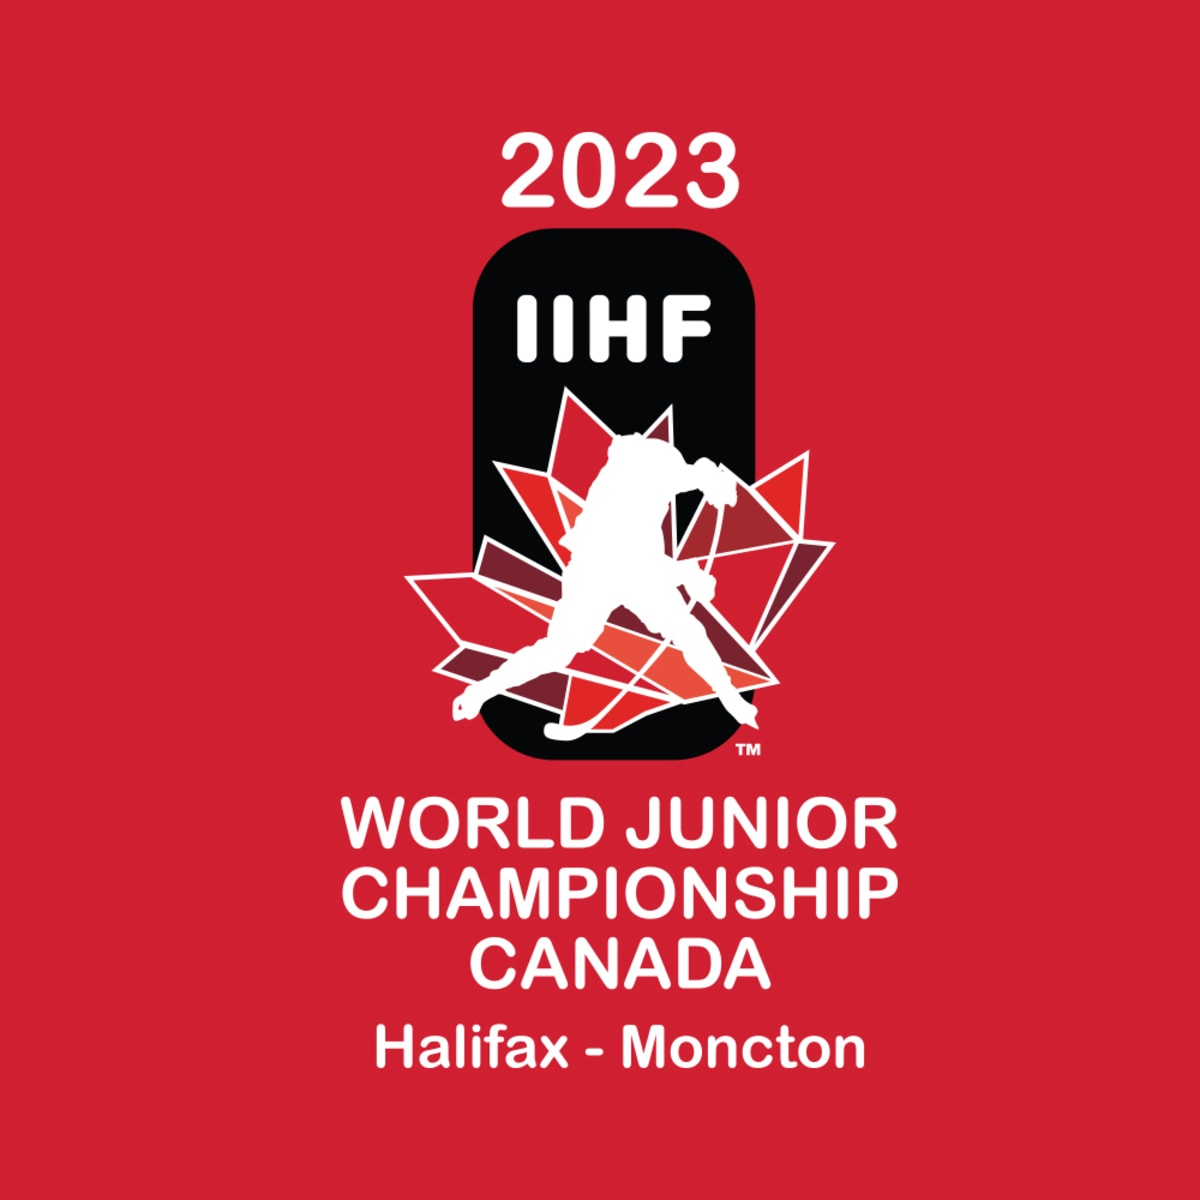 2021 IIHF World Junior Championship